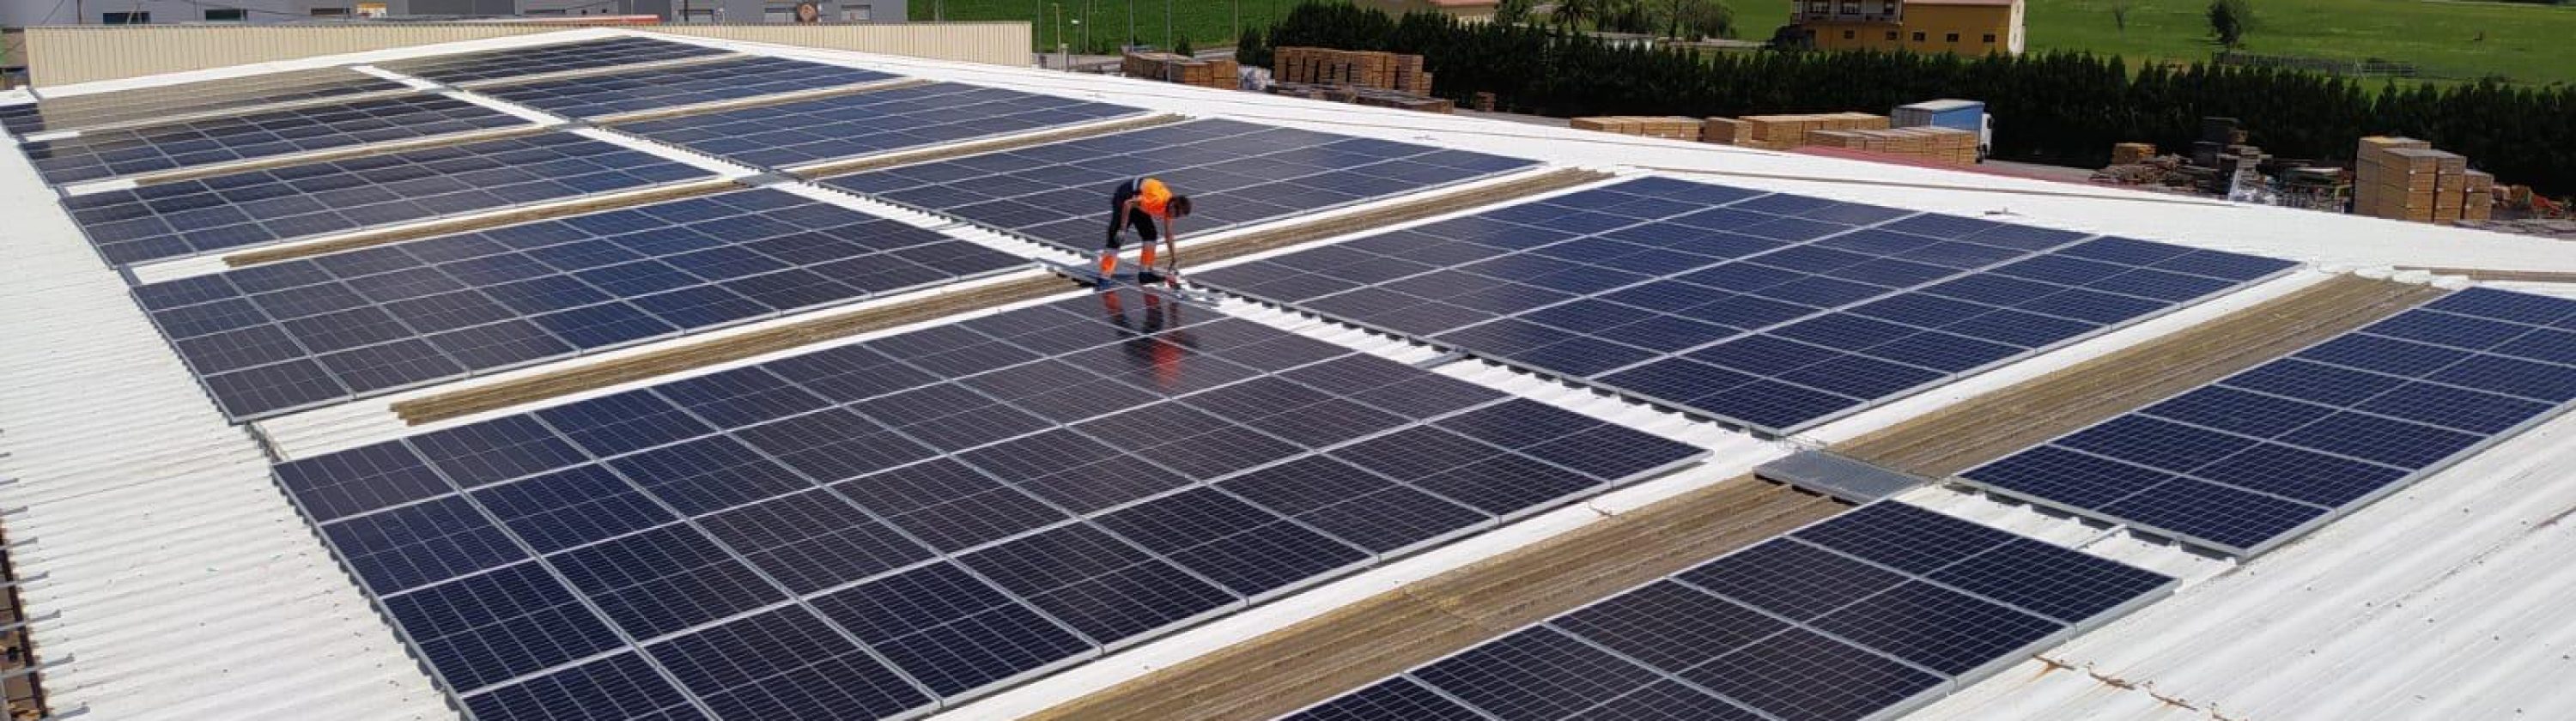 Placas solares instaladas para conseguir la eficiencia y sostenibilidad energética en el desarrollo de nuestra actividad.